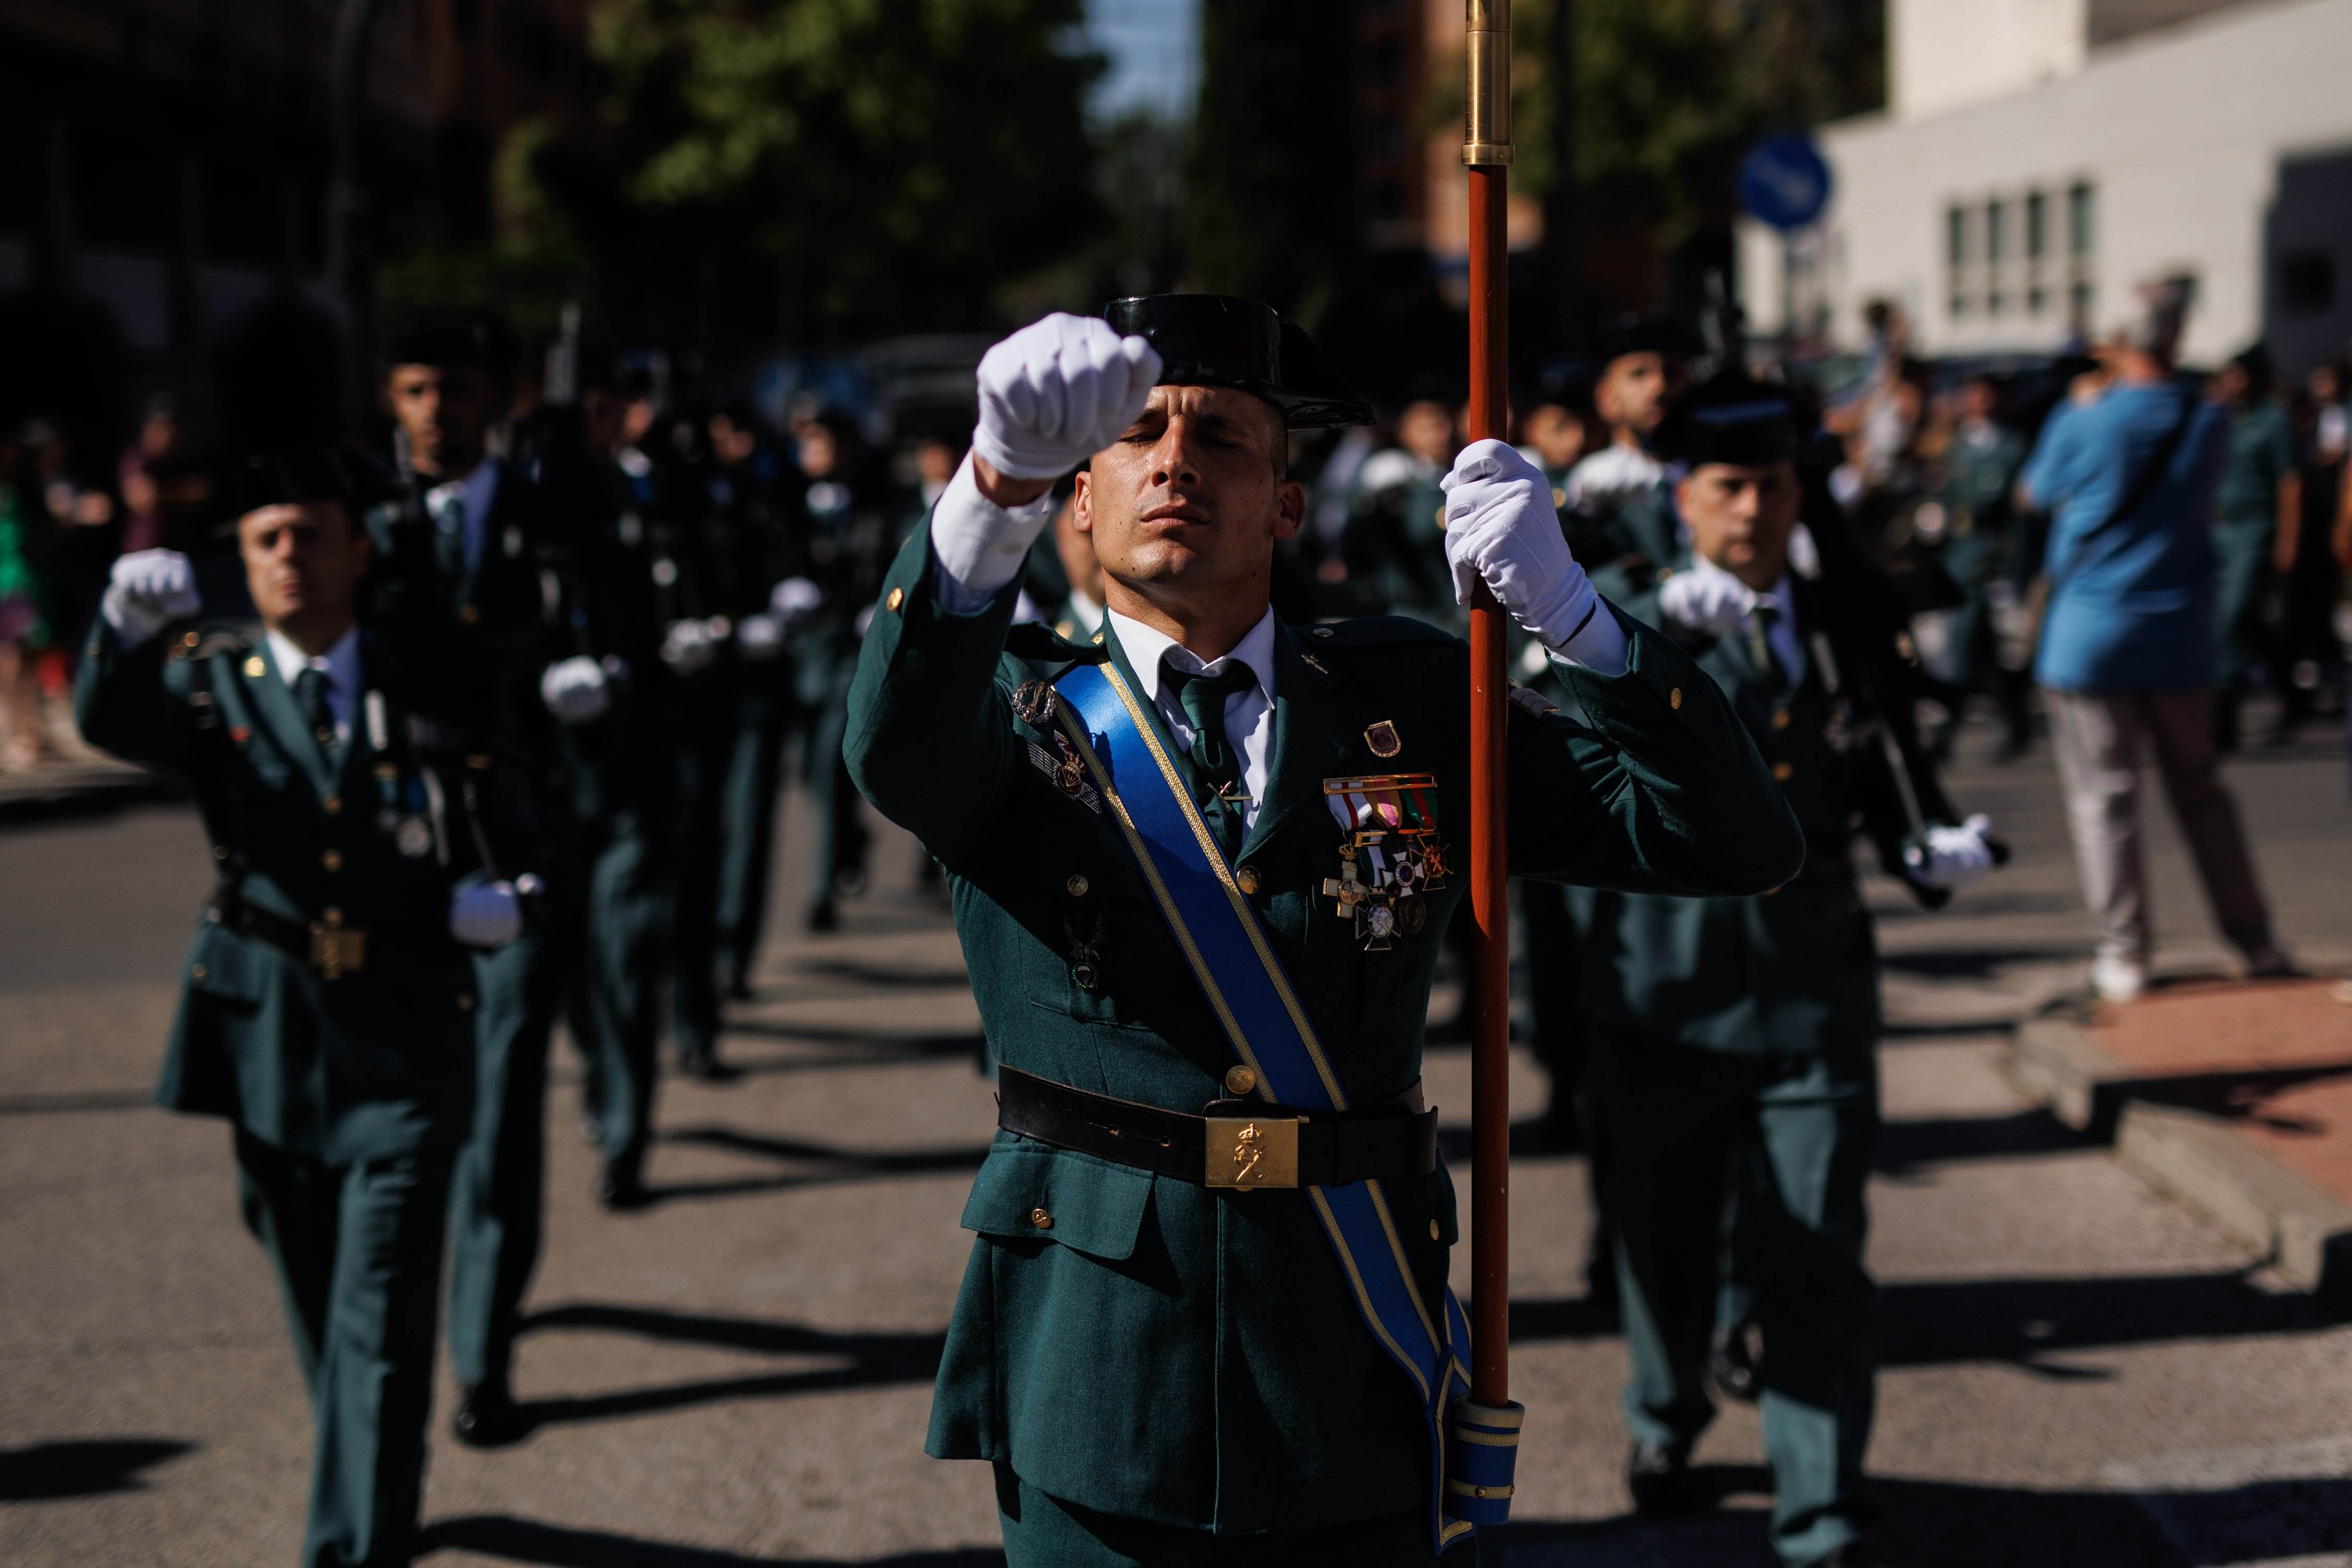 Creus que s'han de suprimir les desfilades militars espanyoles?